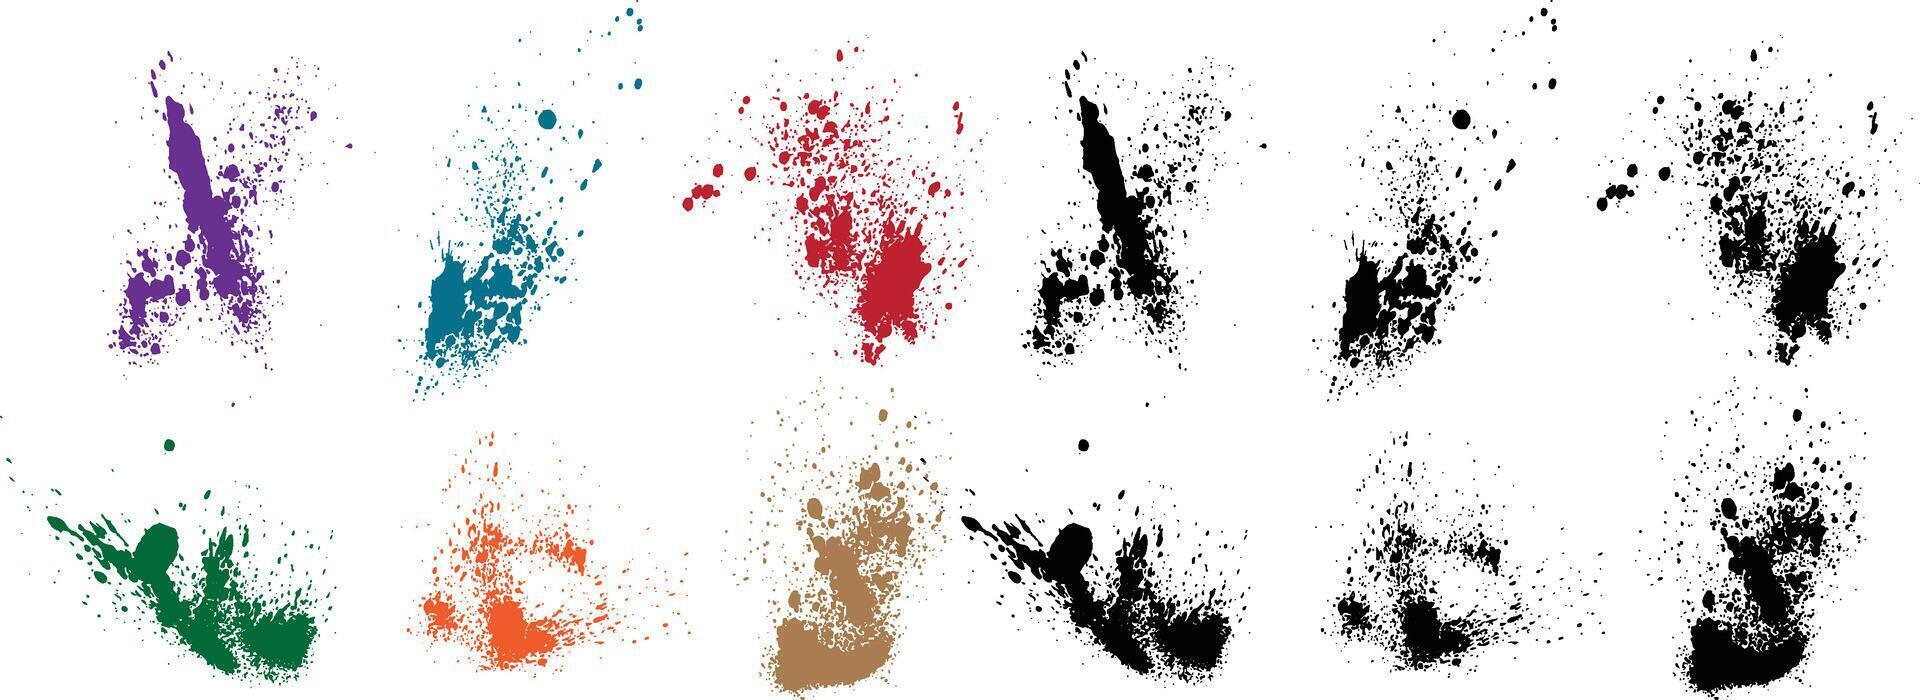 impostato di vettore viola, Grano, Nero, rosso, verde, arancia colore sangue dipingere schizzare macchia disegnato a mano spazzola ictus